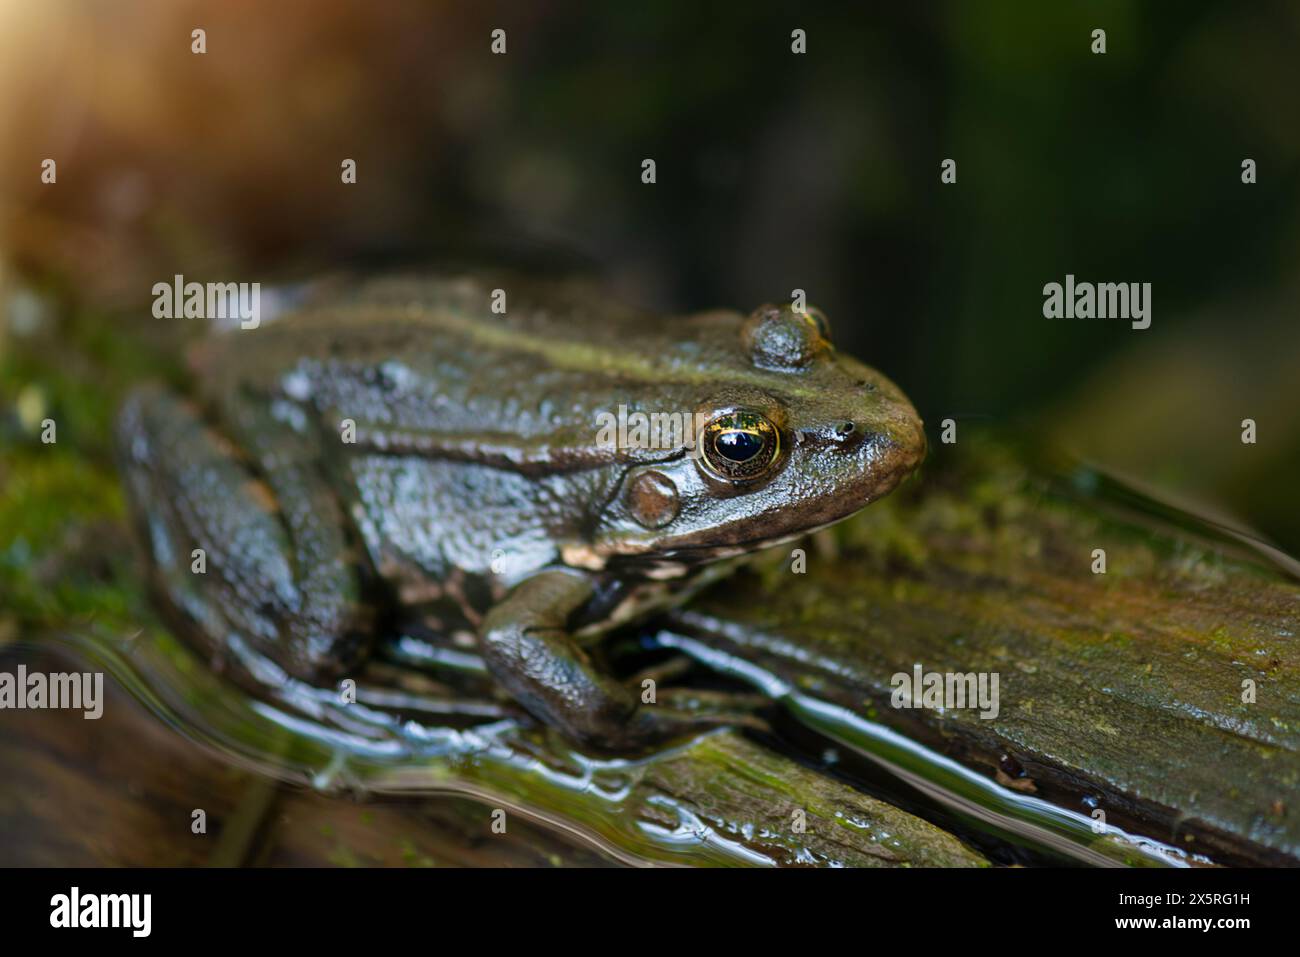 Aga toad, bufo marinus assis sur une bûche d'arbre, habitant d'amphibiens dans le système écologique des zones humides, Haff Reimech Banque D'Images